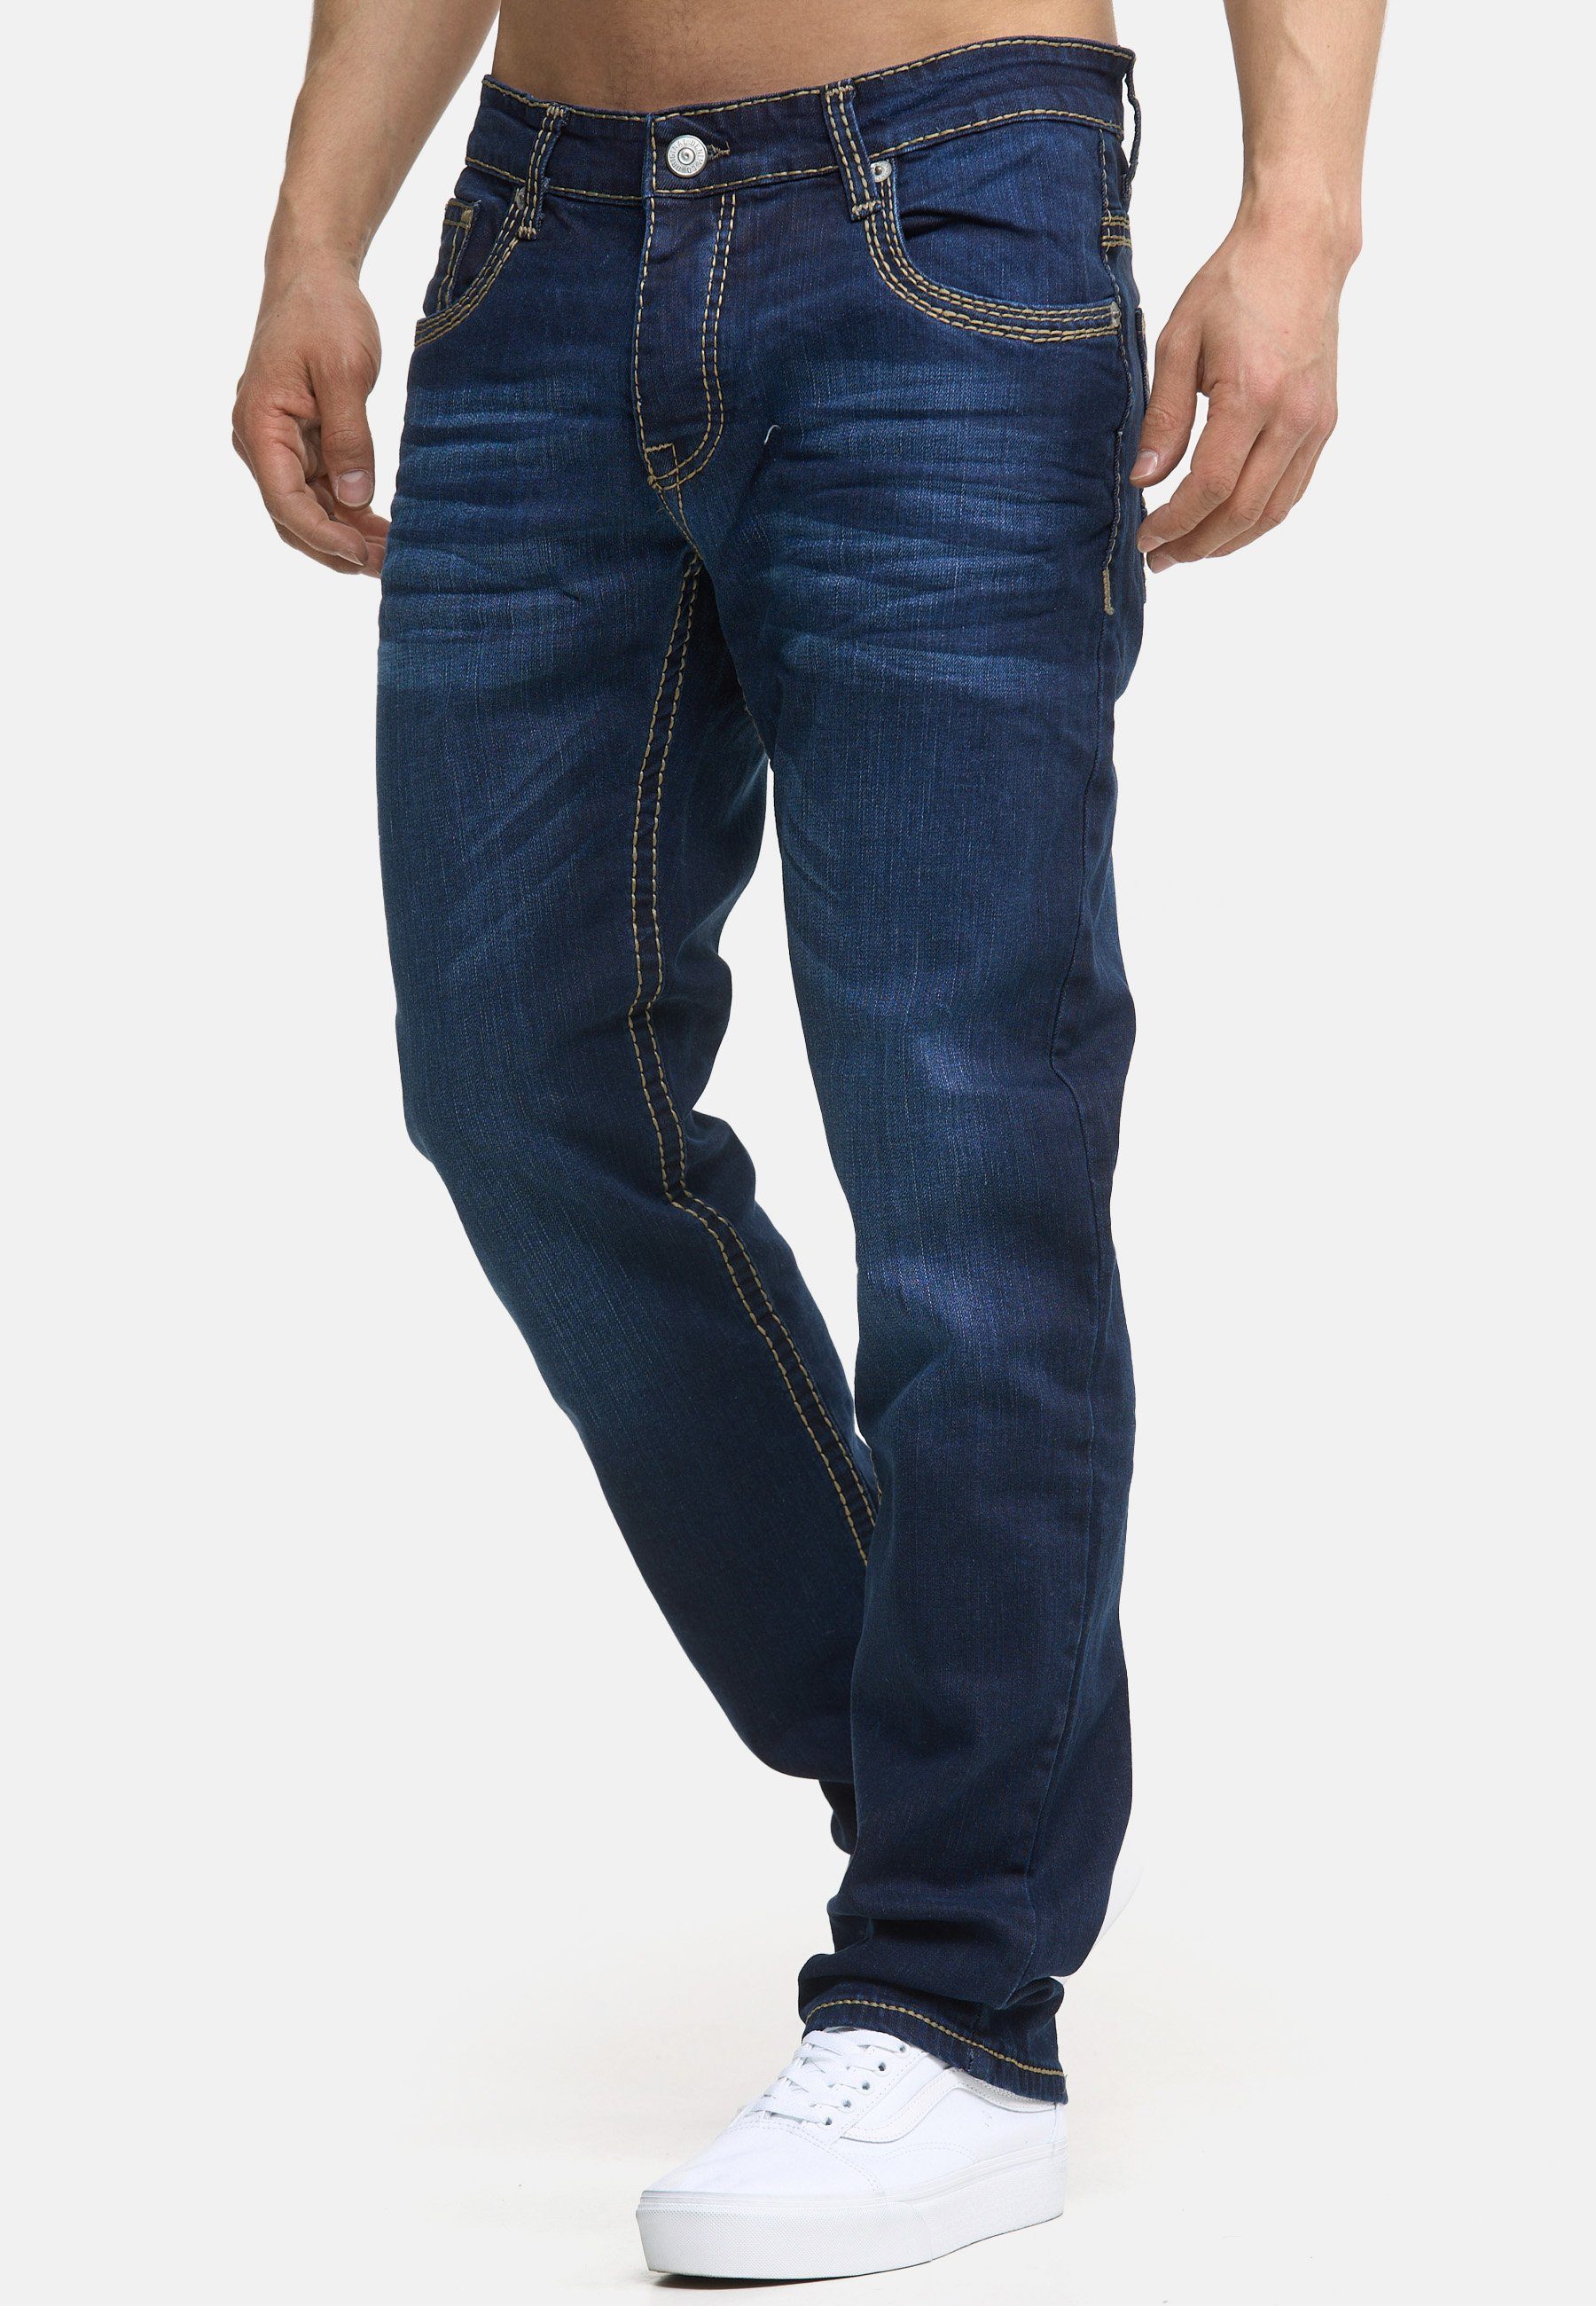 Jeans Regular-fit-Jeans Herren Regular Hose Fit Bootcut Code47 Pocket Denim Five Code47 Männer